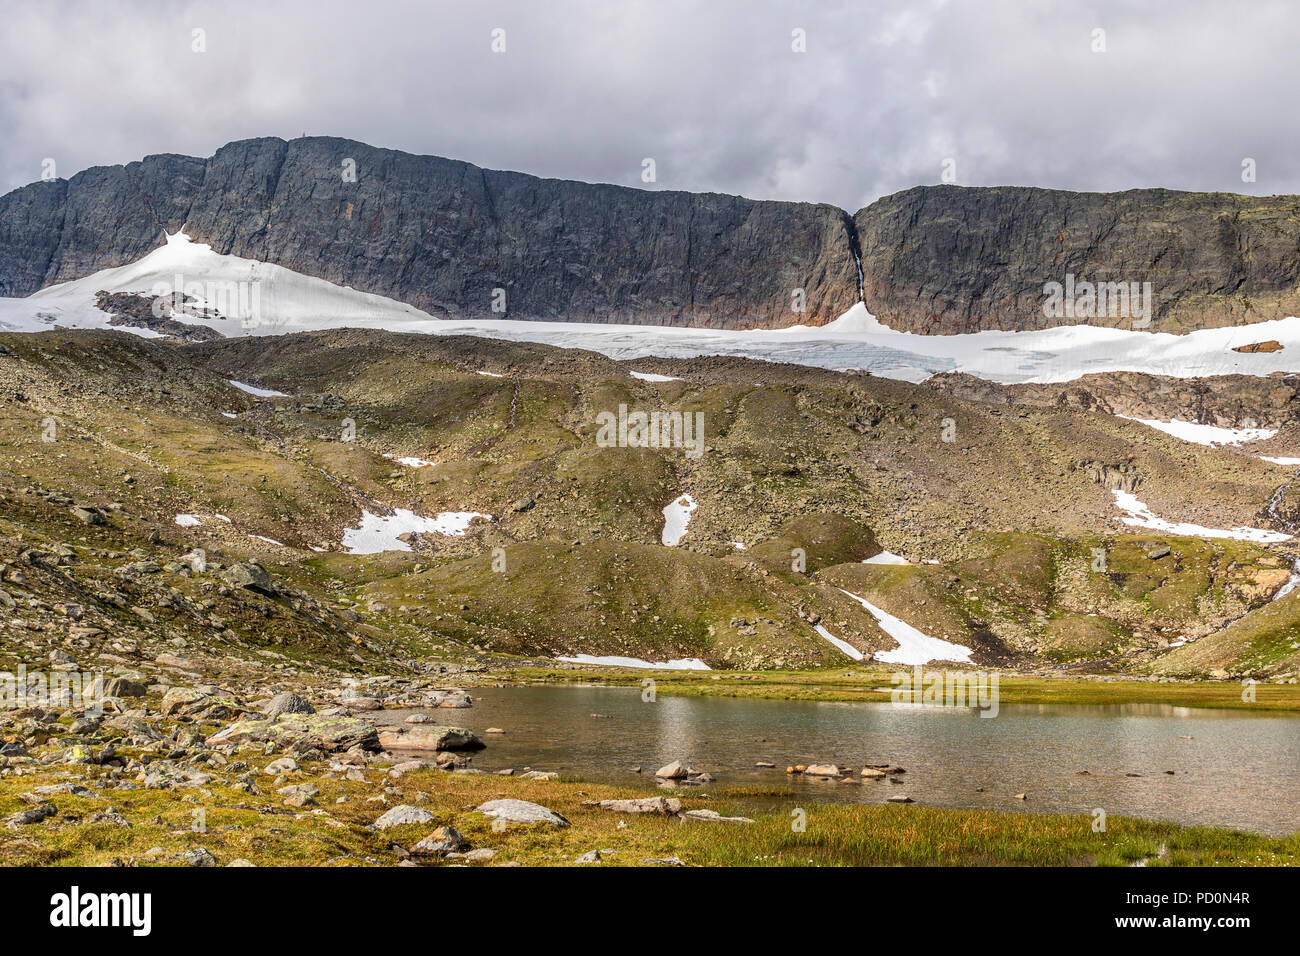 Glacier lake in a wild mountain landscape with a glacier Stock Photo